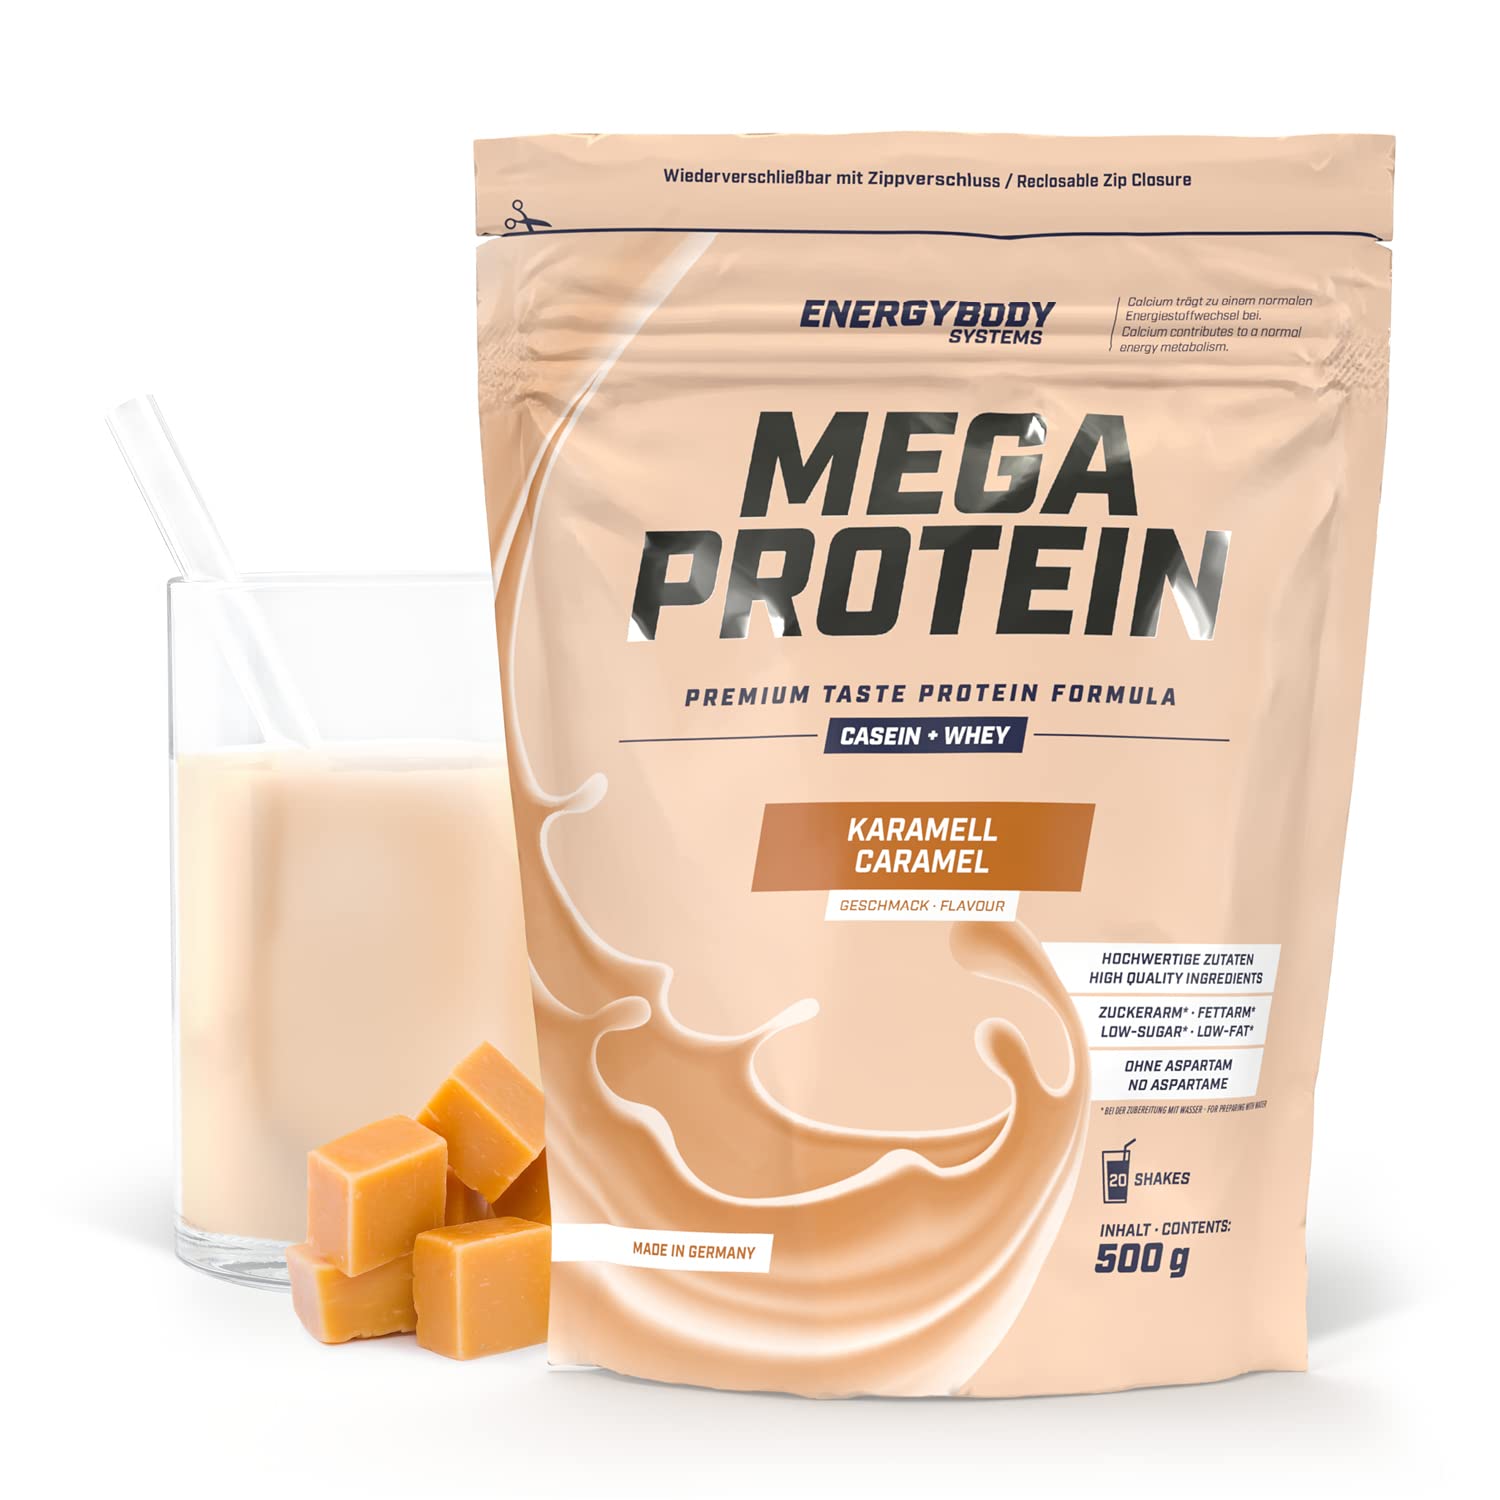 Energybody Mega Protein „Karamell“ 500 g / Mehrkomponenten Protein mit Casein Whey Mix als Eiweißshake / Eiweisspulver ohne Aspartam/ Protein-Pulver / 20 Portionen